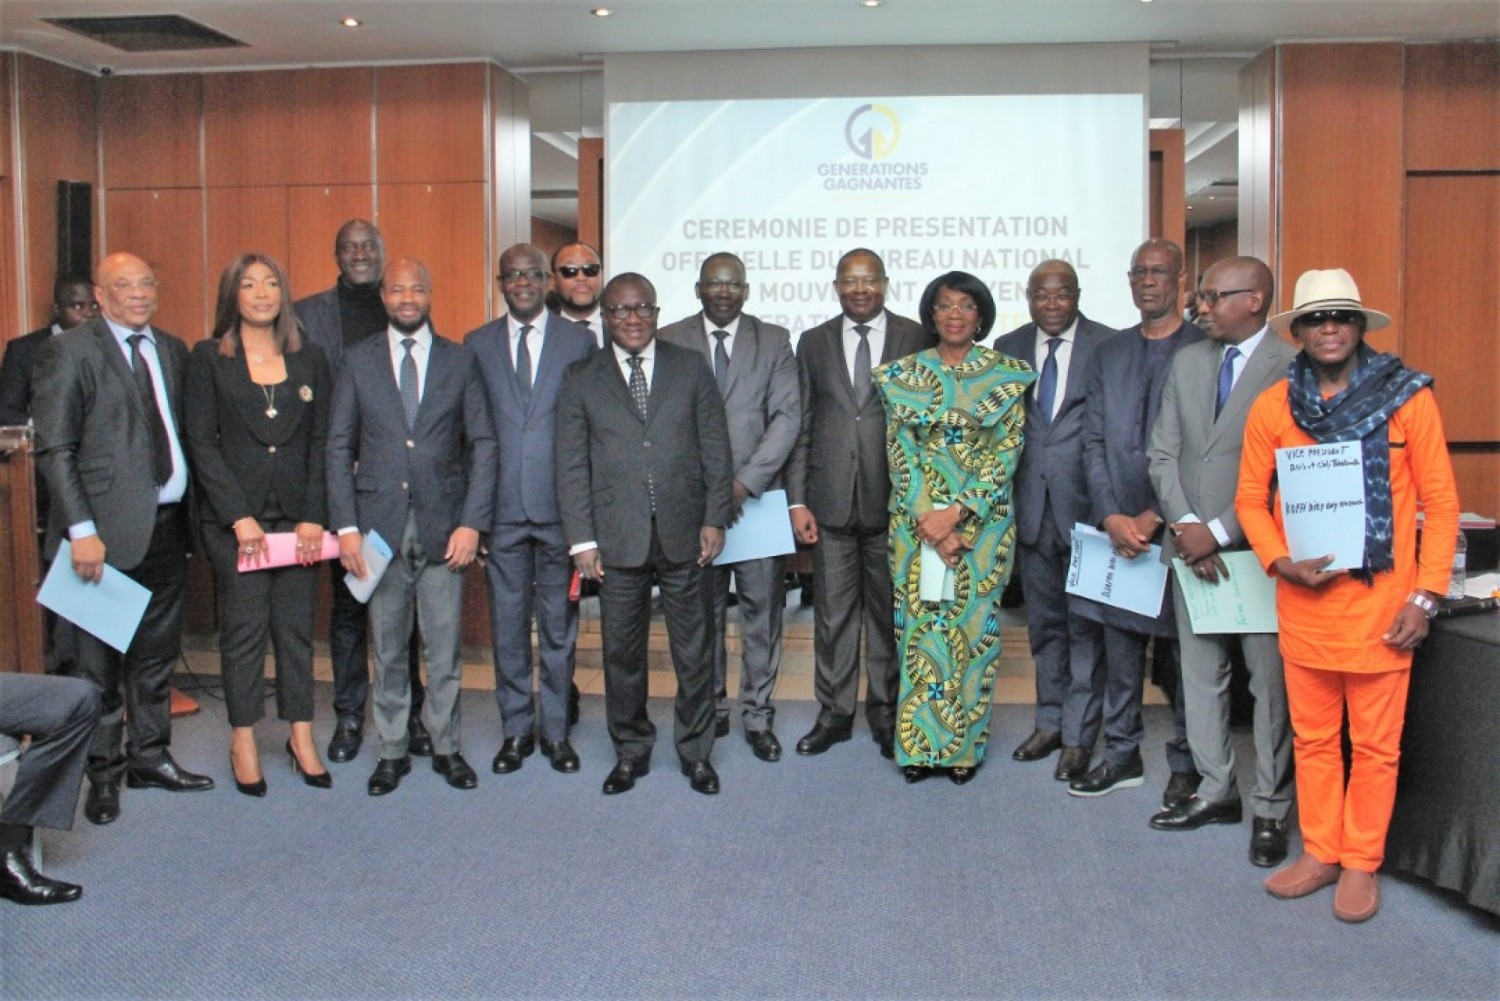 Côte d'Ivoire :  Présentation du nouveau Bureau de Génération gagnante, le Président Simon Kambiré décline sa vision et annonce la réouverture du siège